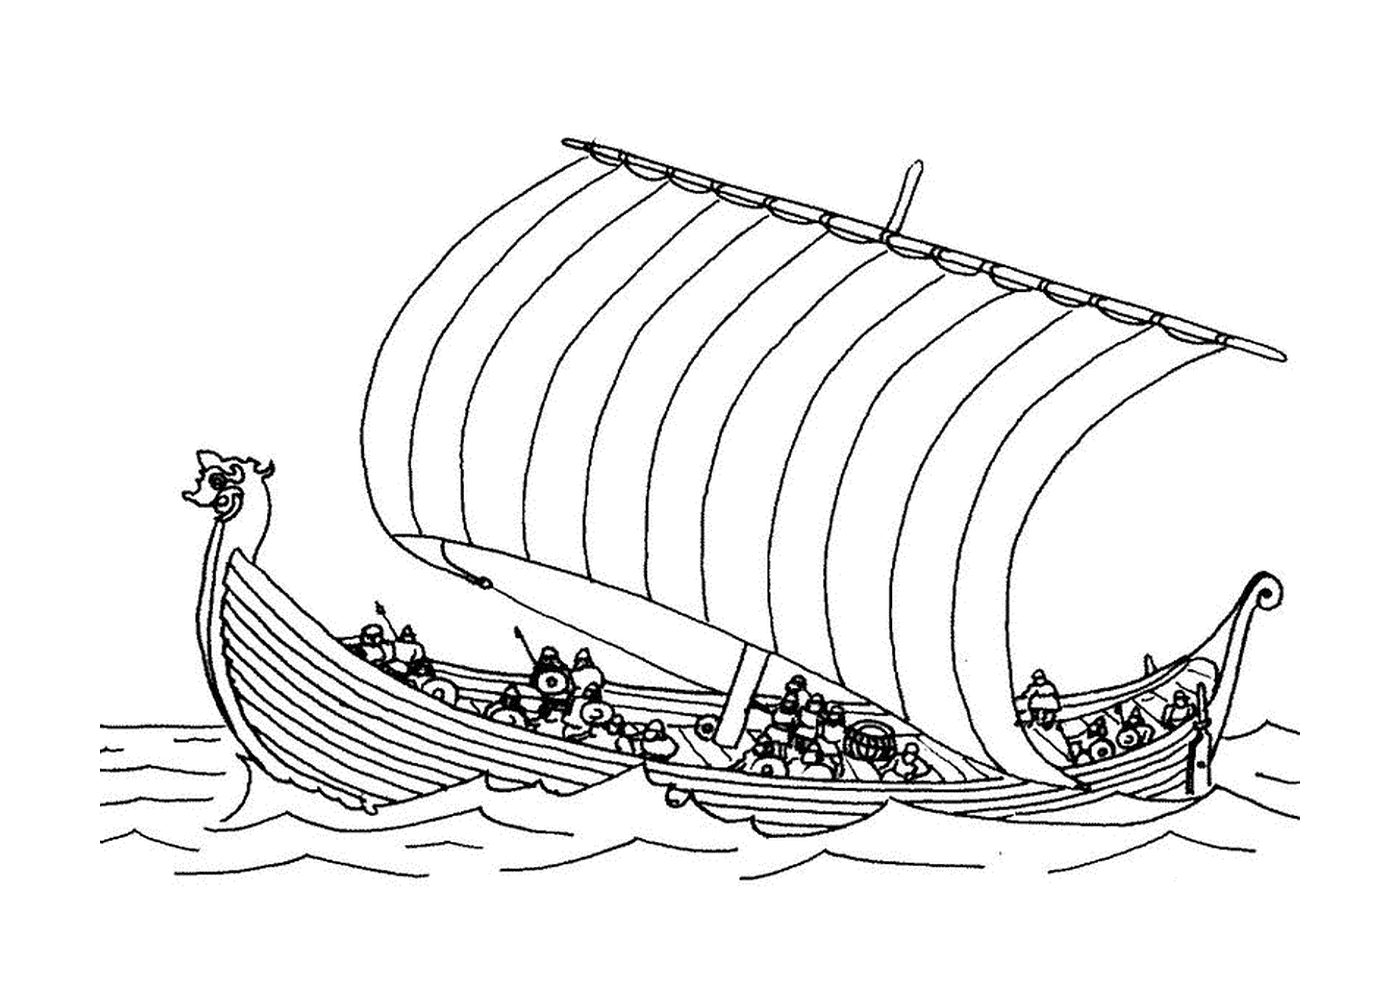   Un bateau drakkar sur l'eau 